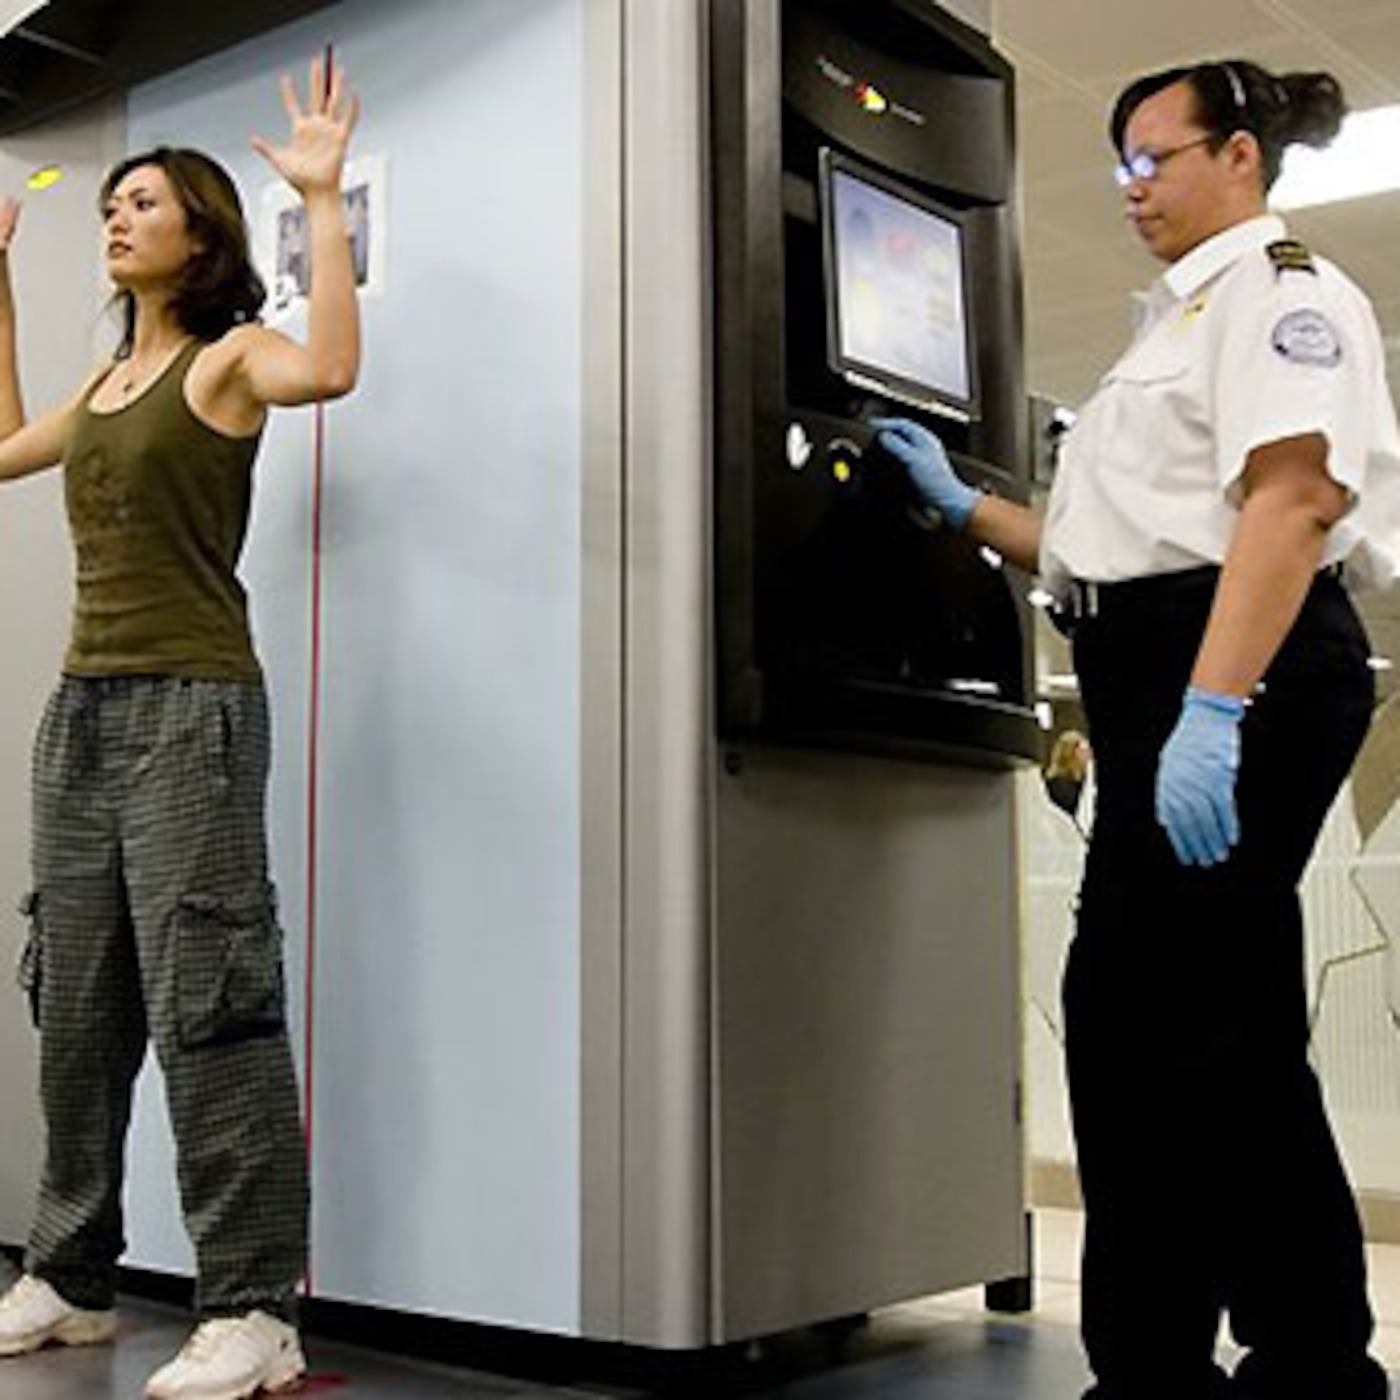 Досмотр девушки. Full body Scanner в аэропорту. Микроволновый сканер для досмотра. Досмотр в аэропорту. Досмотр человека.